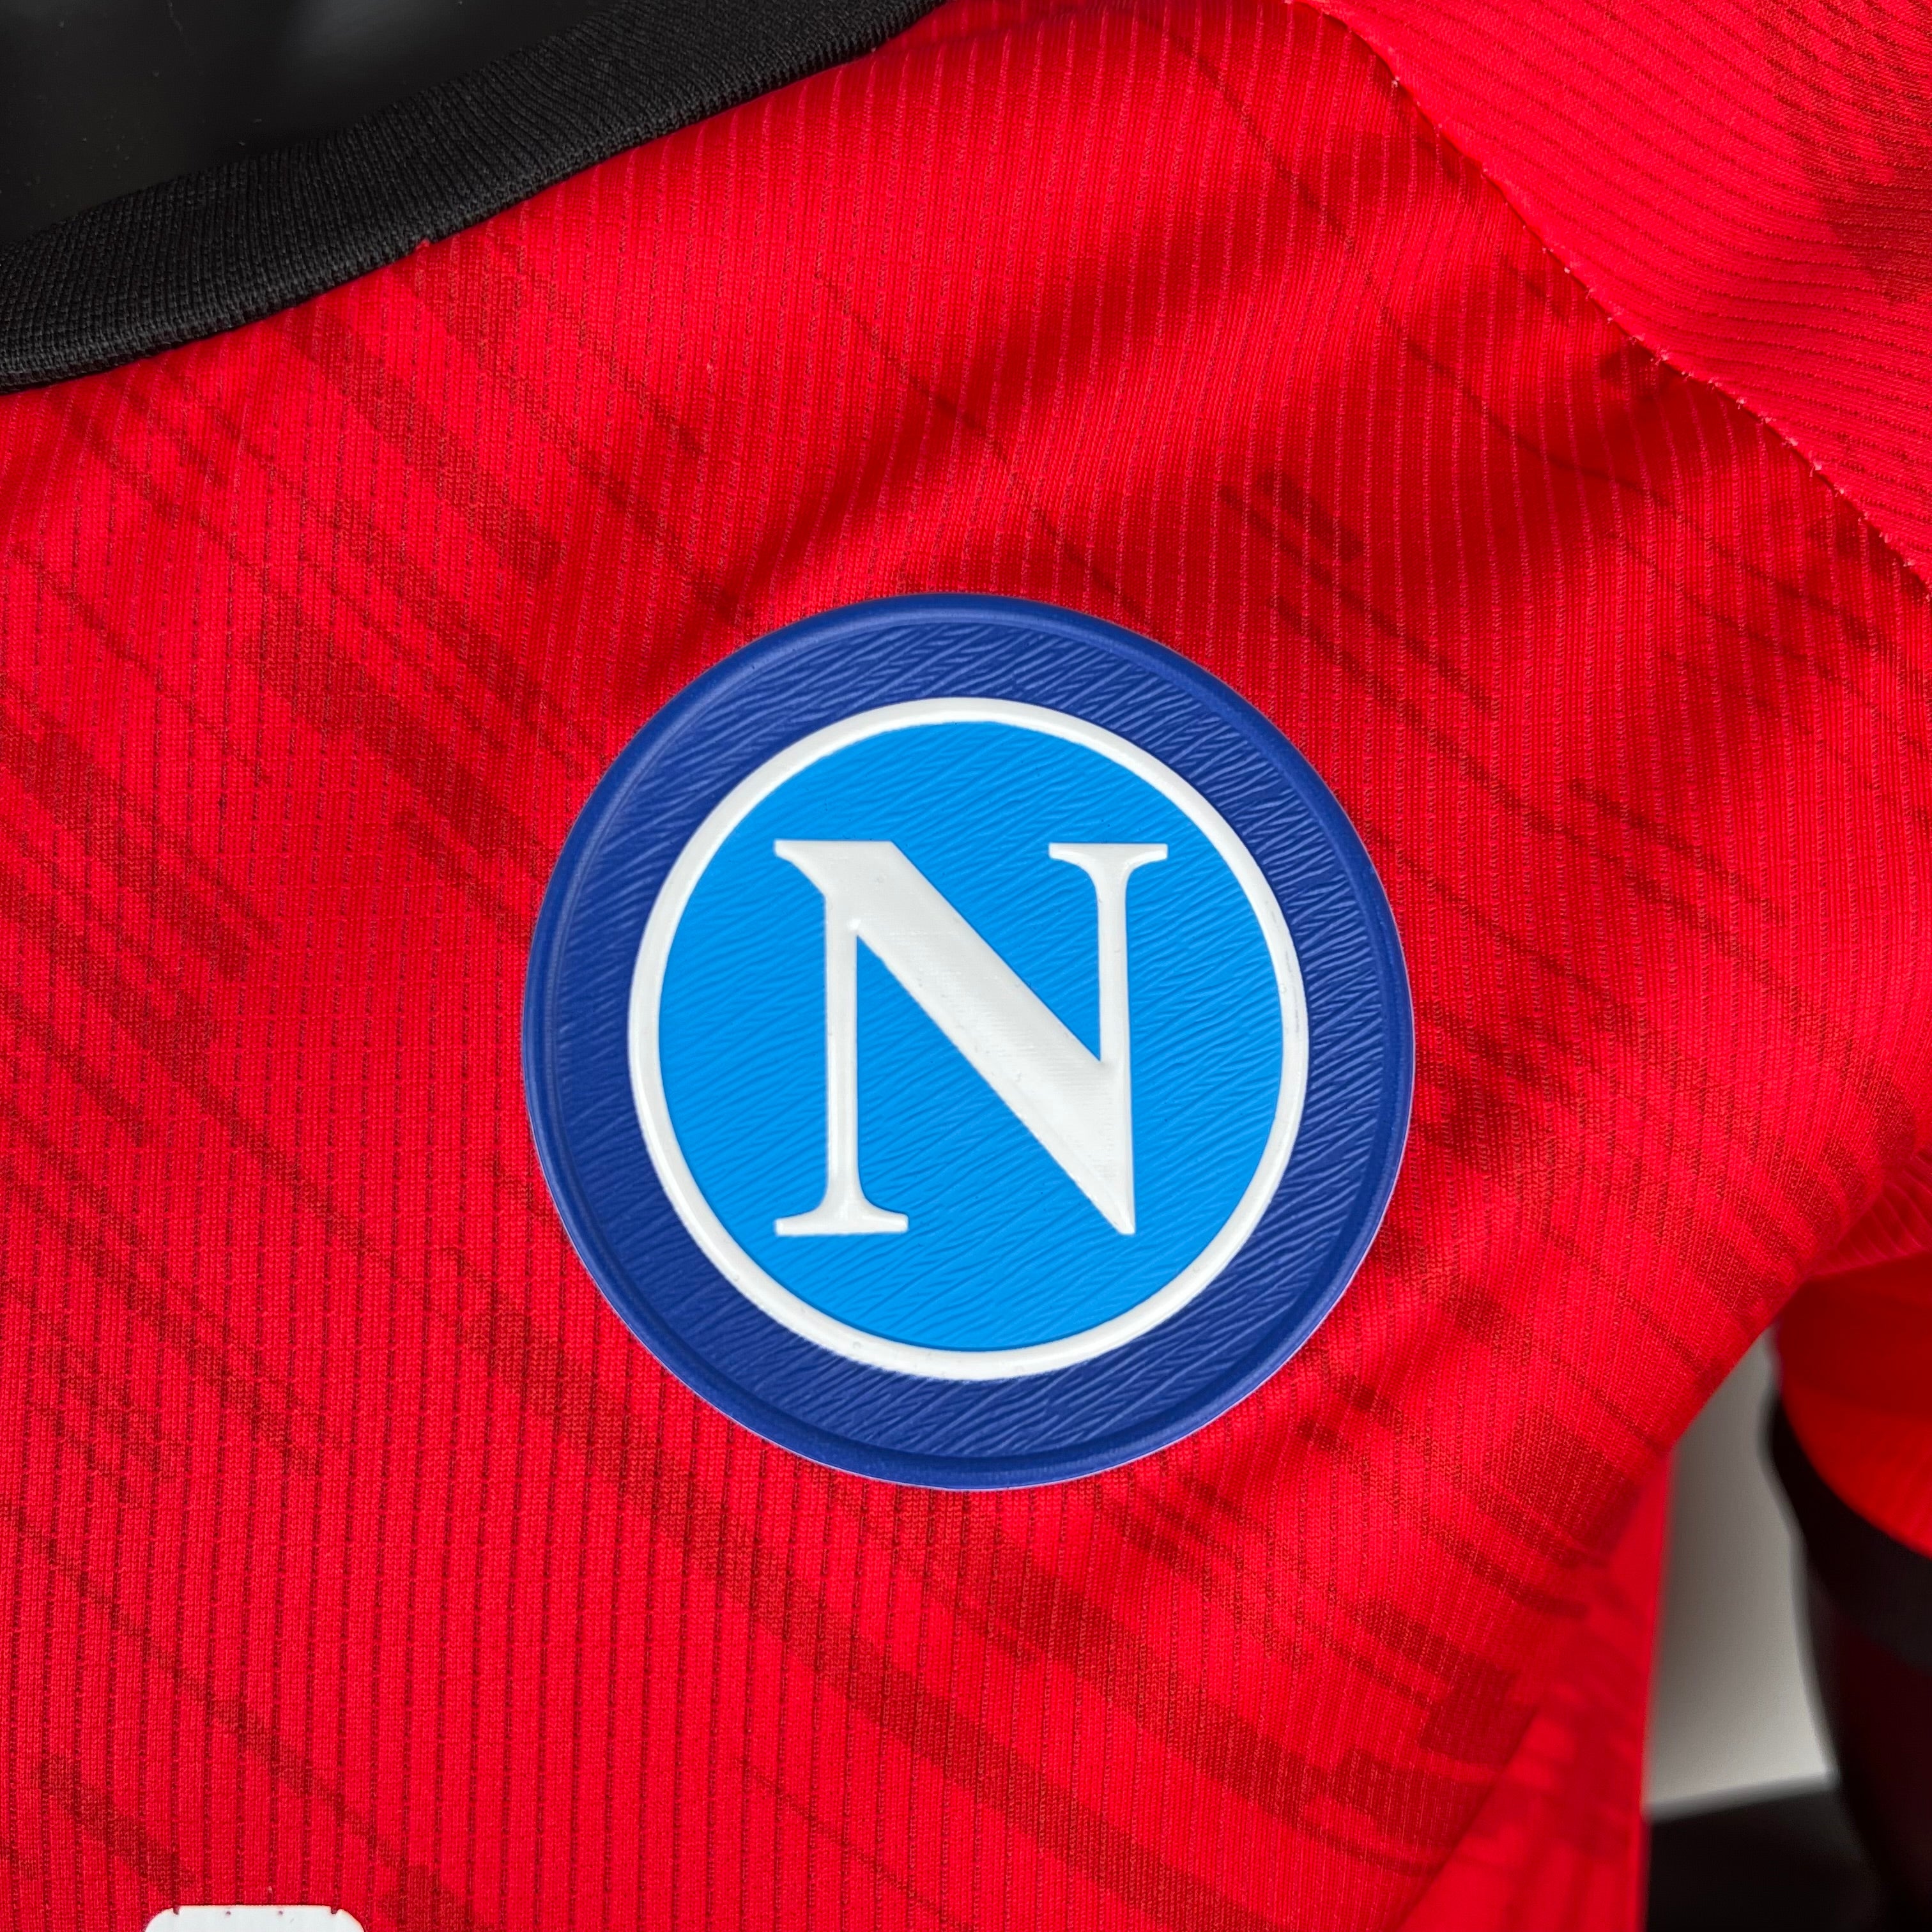 Napoli Face-Game Gollini - 23/24 Player Version